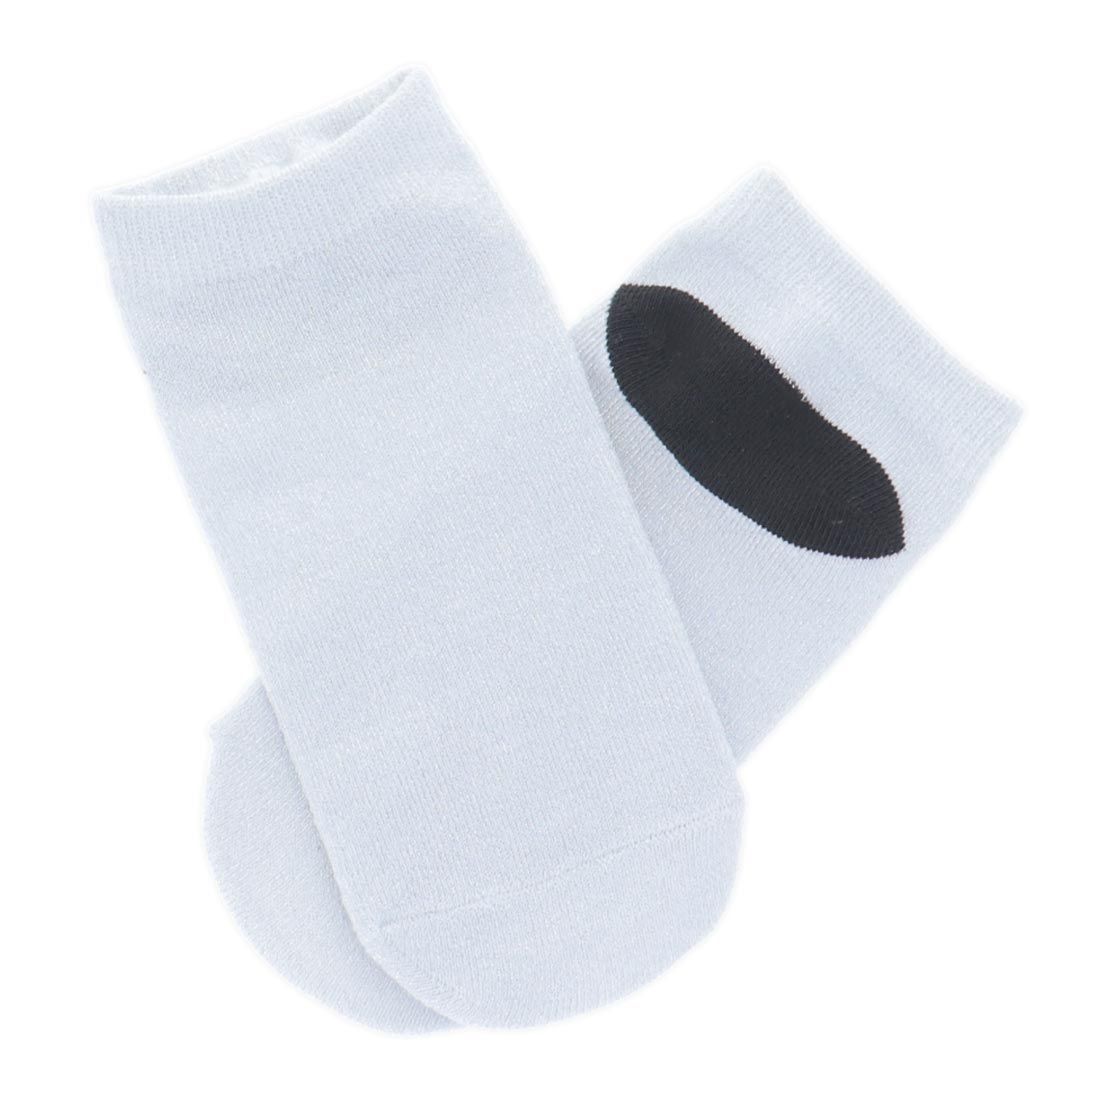 Sublimation Unisex Ankle Adult Socks (1 Pair)